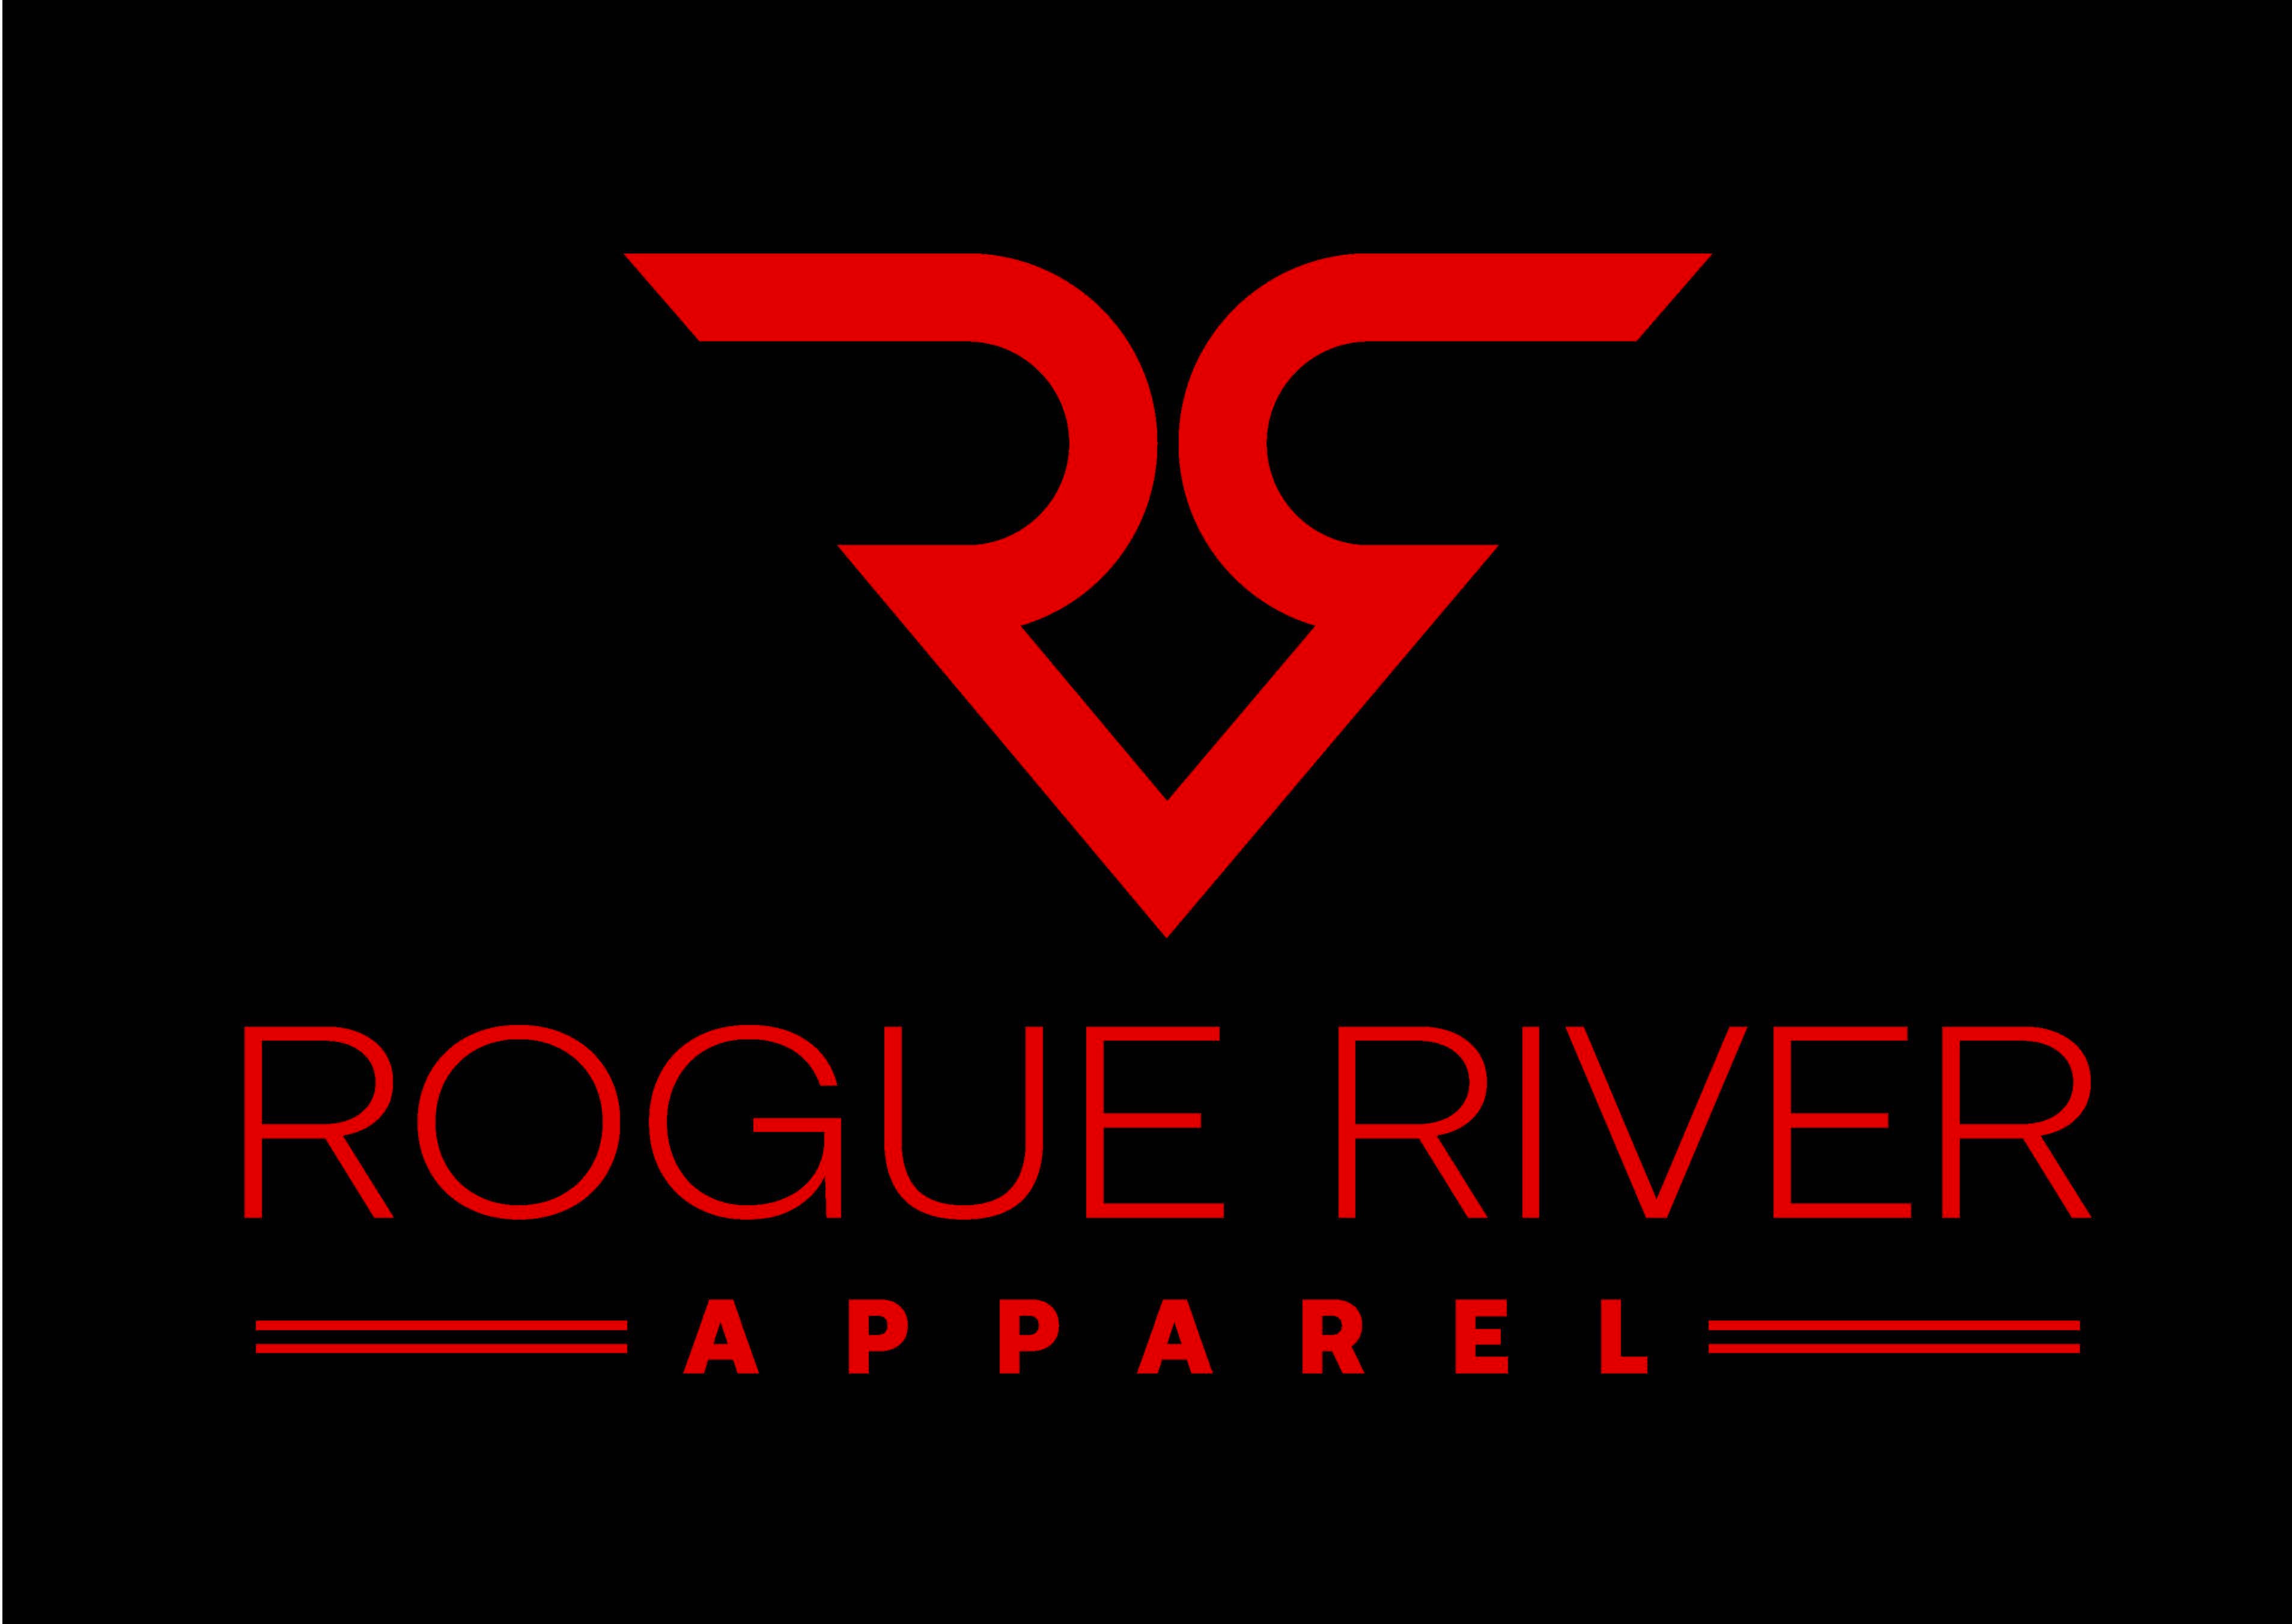 Rogue River Apparel